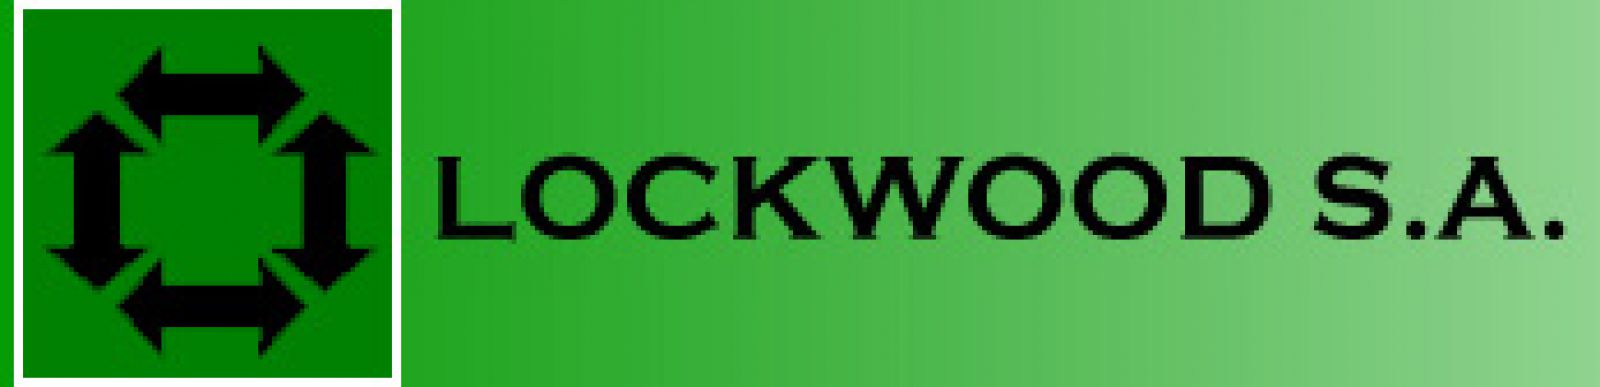 Lockwood S.A.